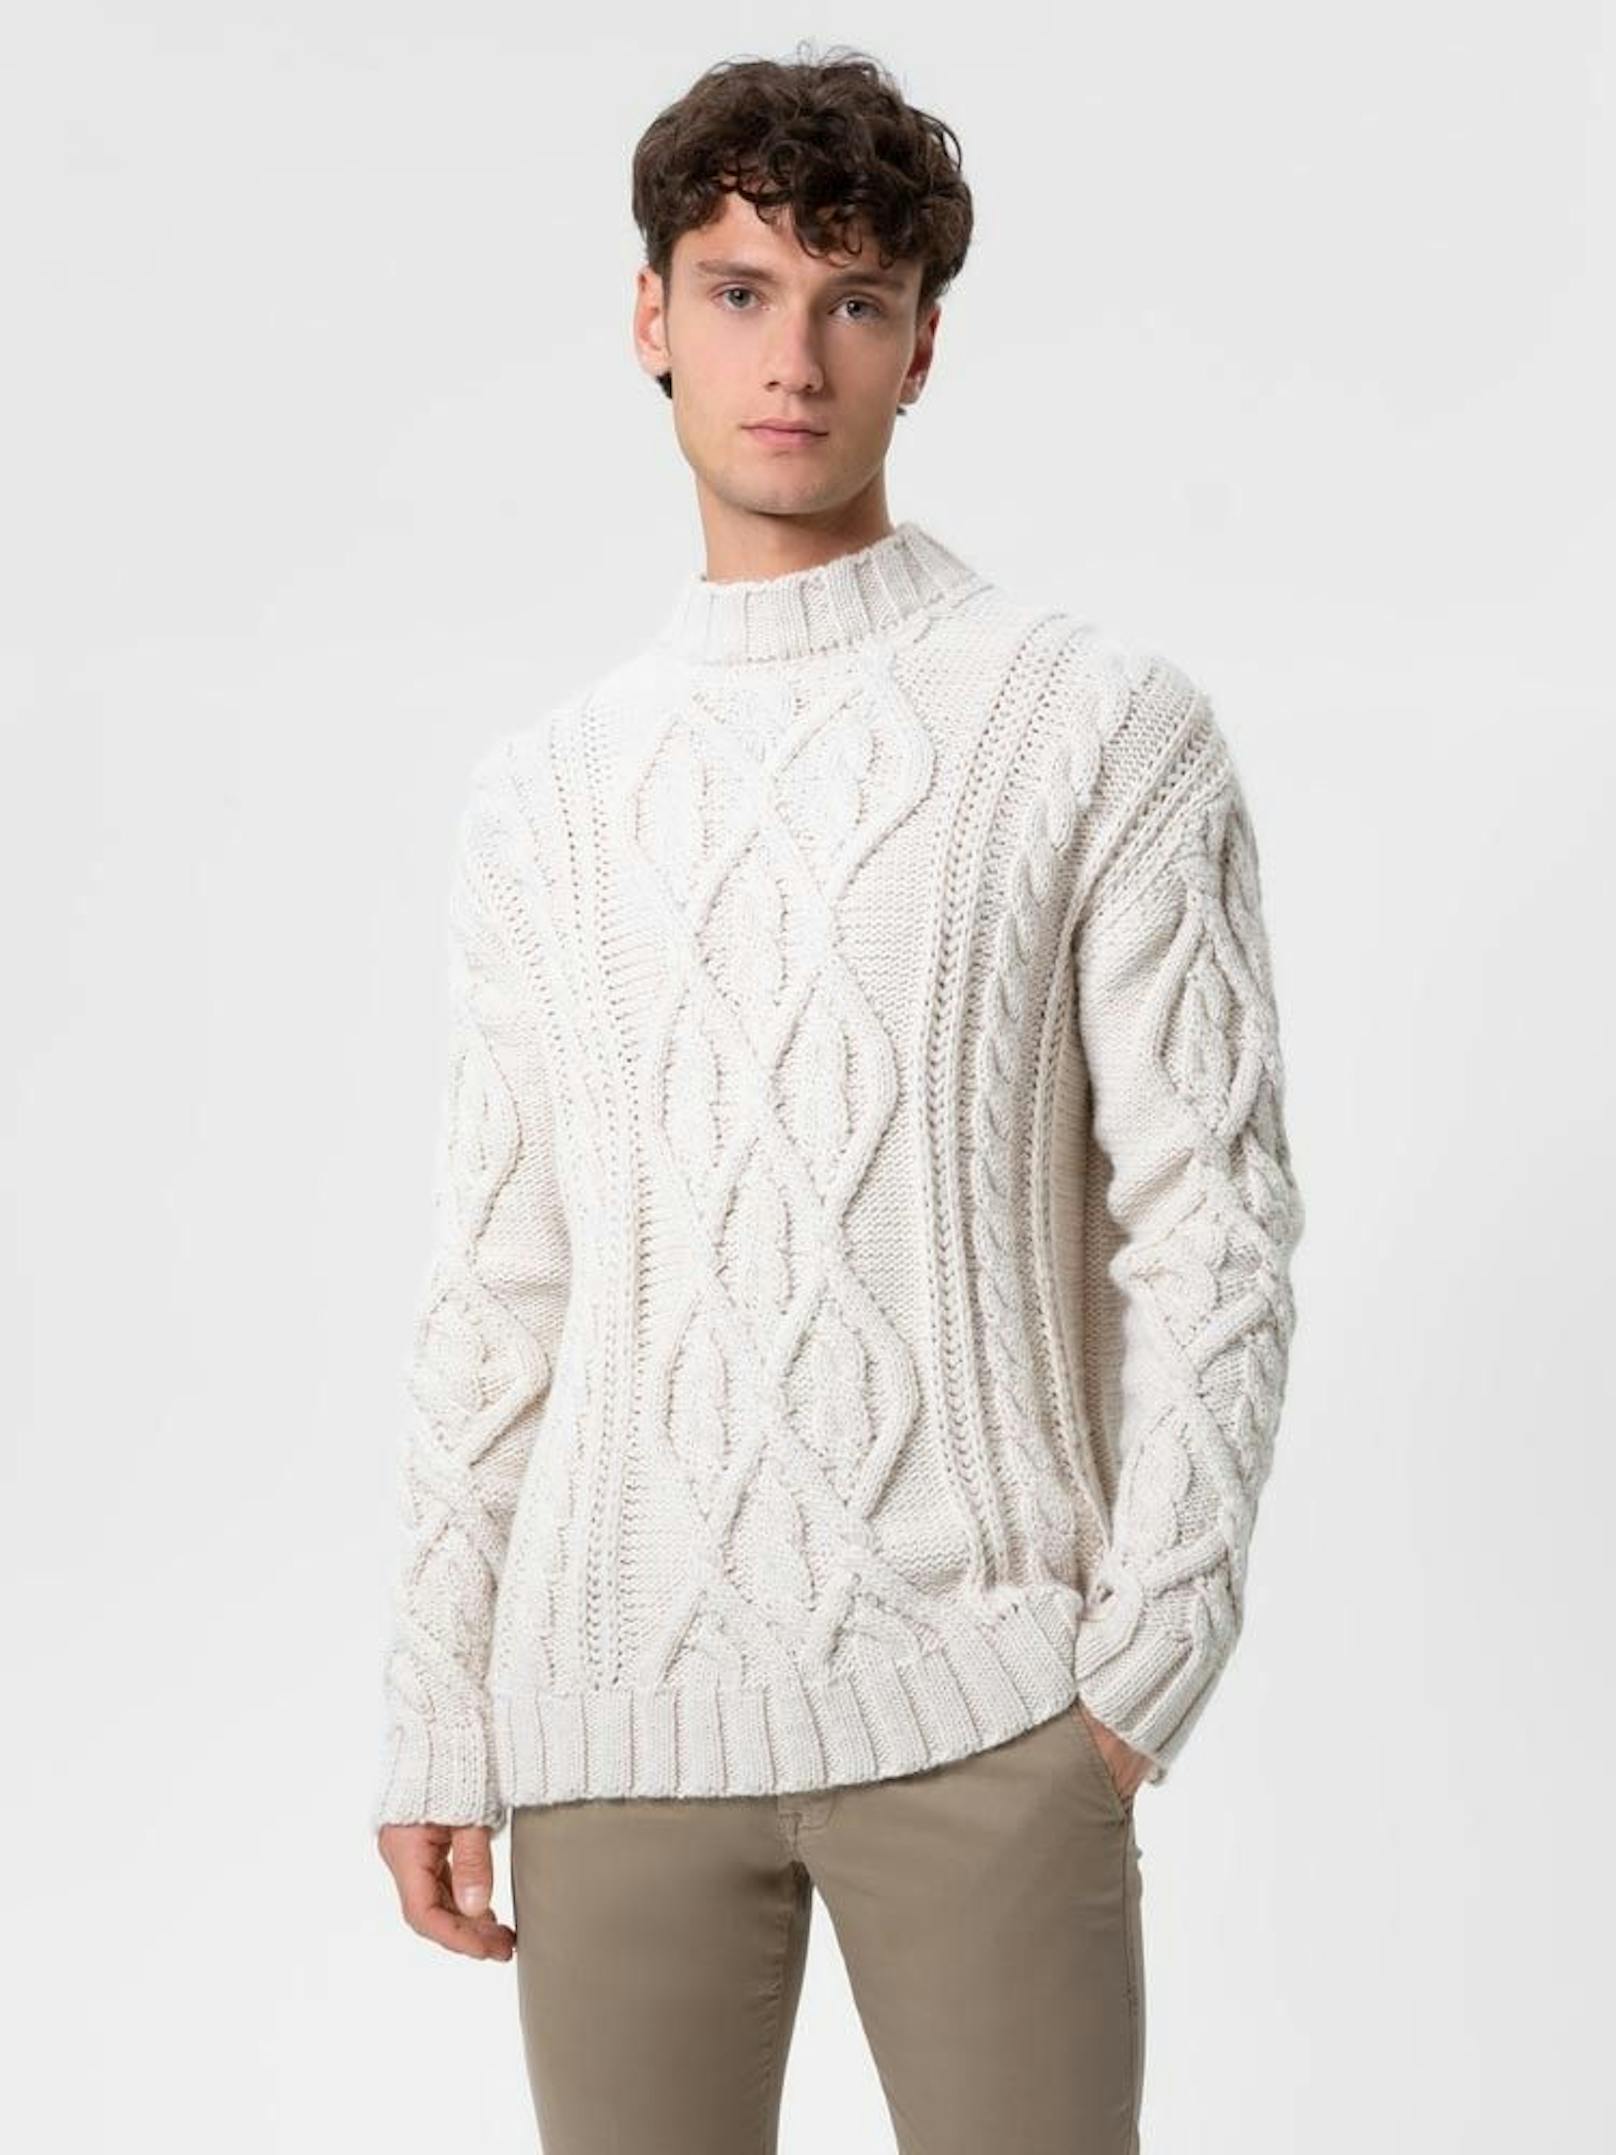 Ein bequemer Pullover ist im Winter unbedingt notwendig. Wer seine Hoodies lieber im Kleiderkasten lassen möchte kann stattdessen einen Zopfstrickpullover tragen.